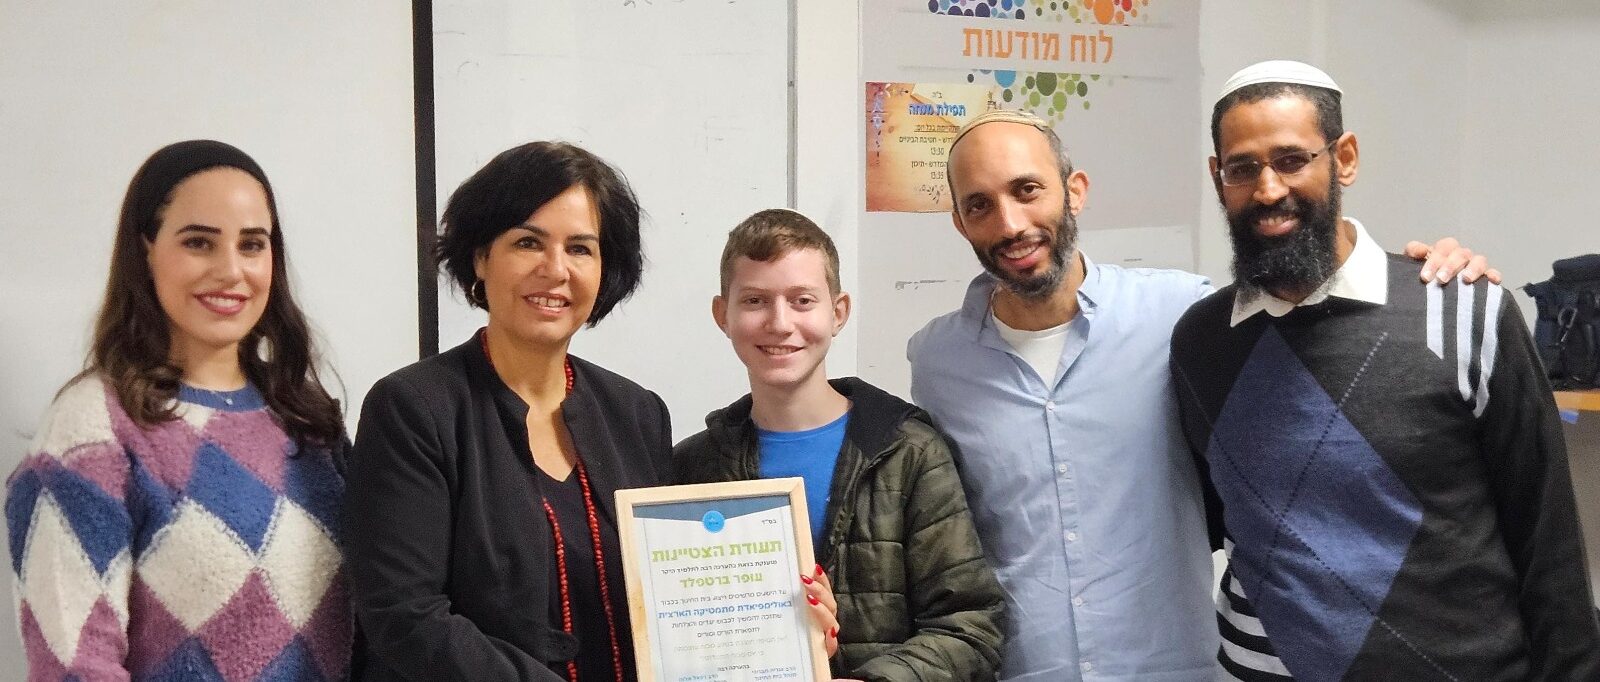 המתמטיקאי הצעיר מנתניה בדרך לנבחרת ישראל